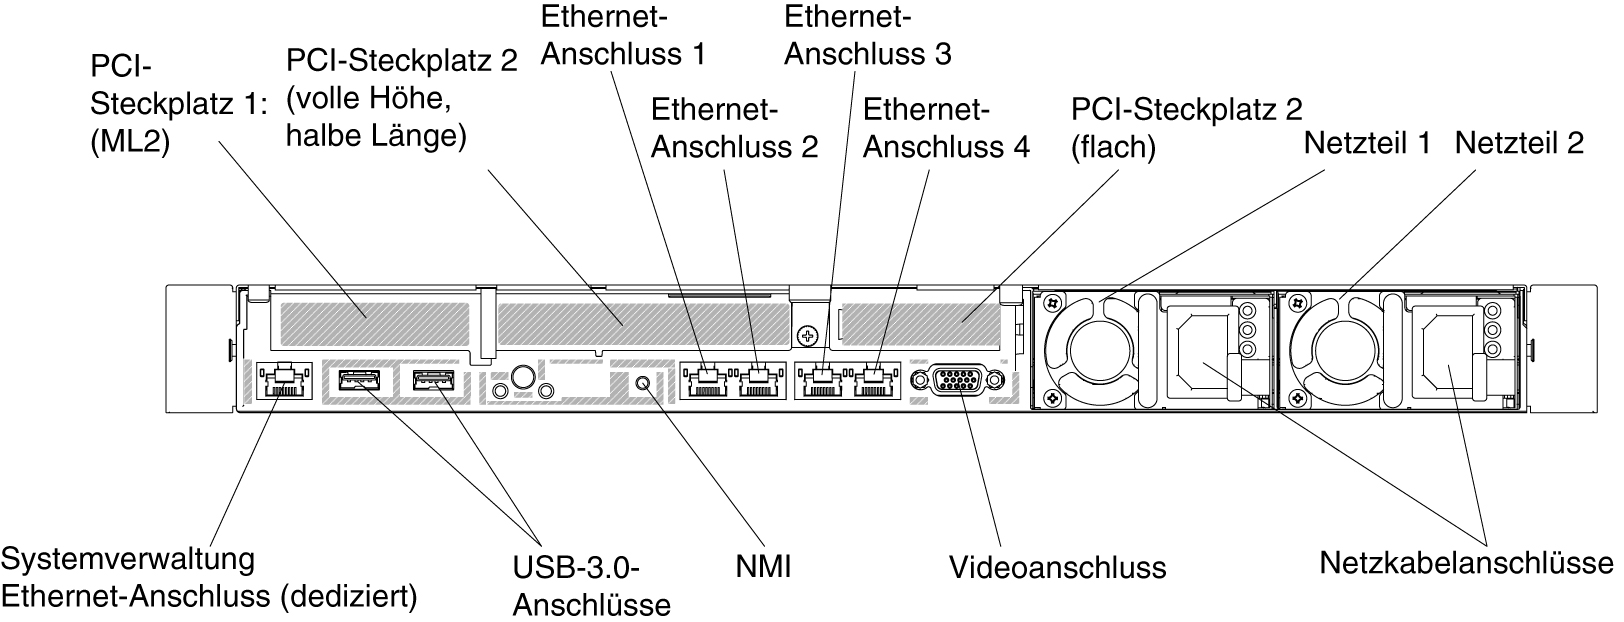 Rückansicht: Konfiguration mit einem ML2-Adapter, einer PCI-Adapterkartenbaugruppe mit voller Höhe und halber Länge und einer flachen PCI-Adapterkartenbaugruppe